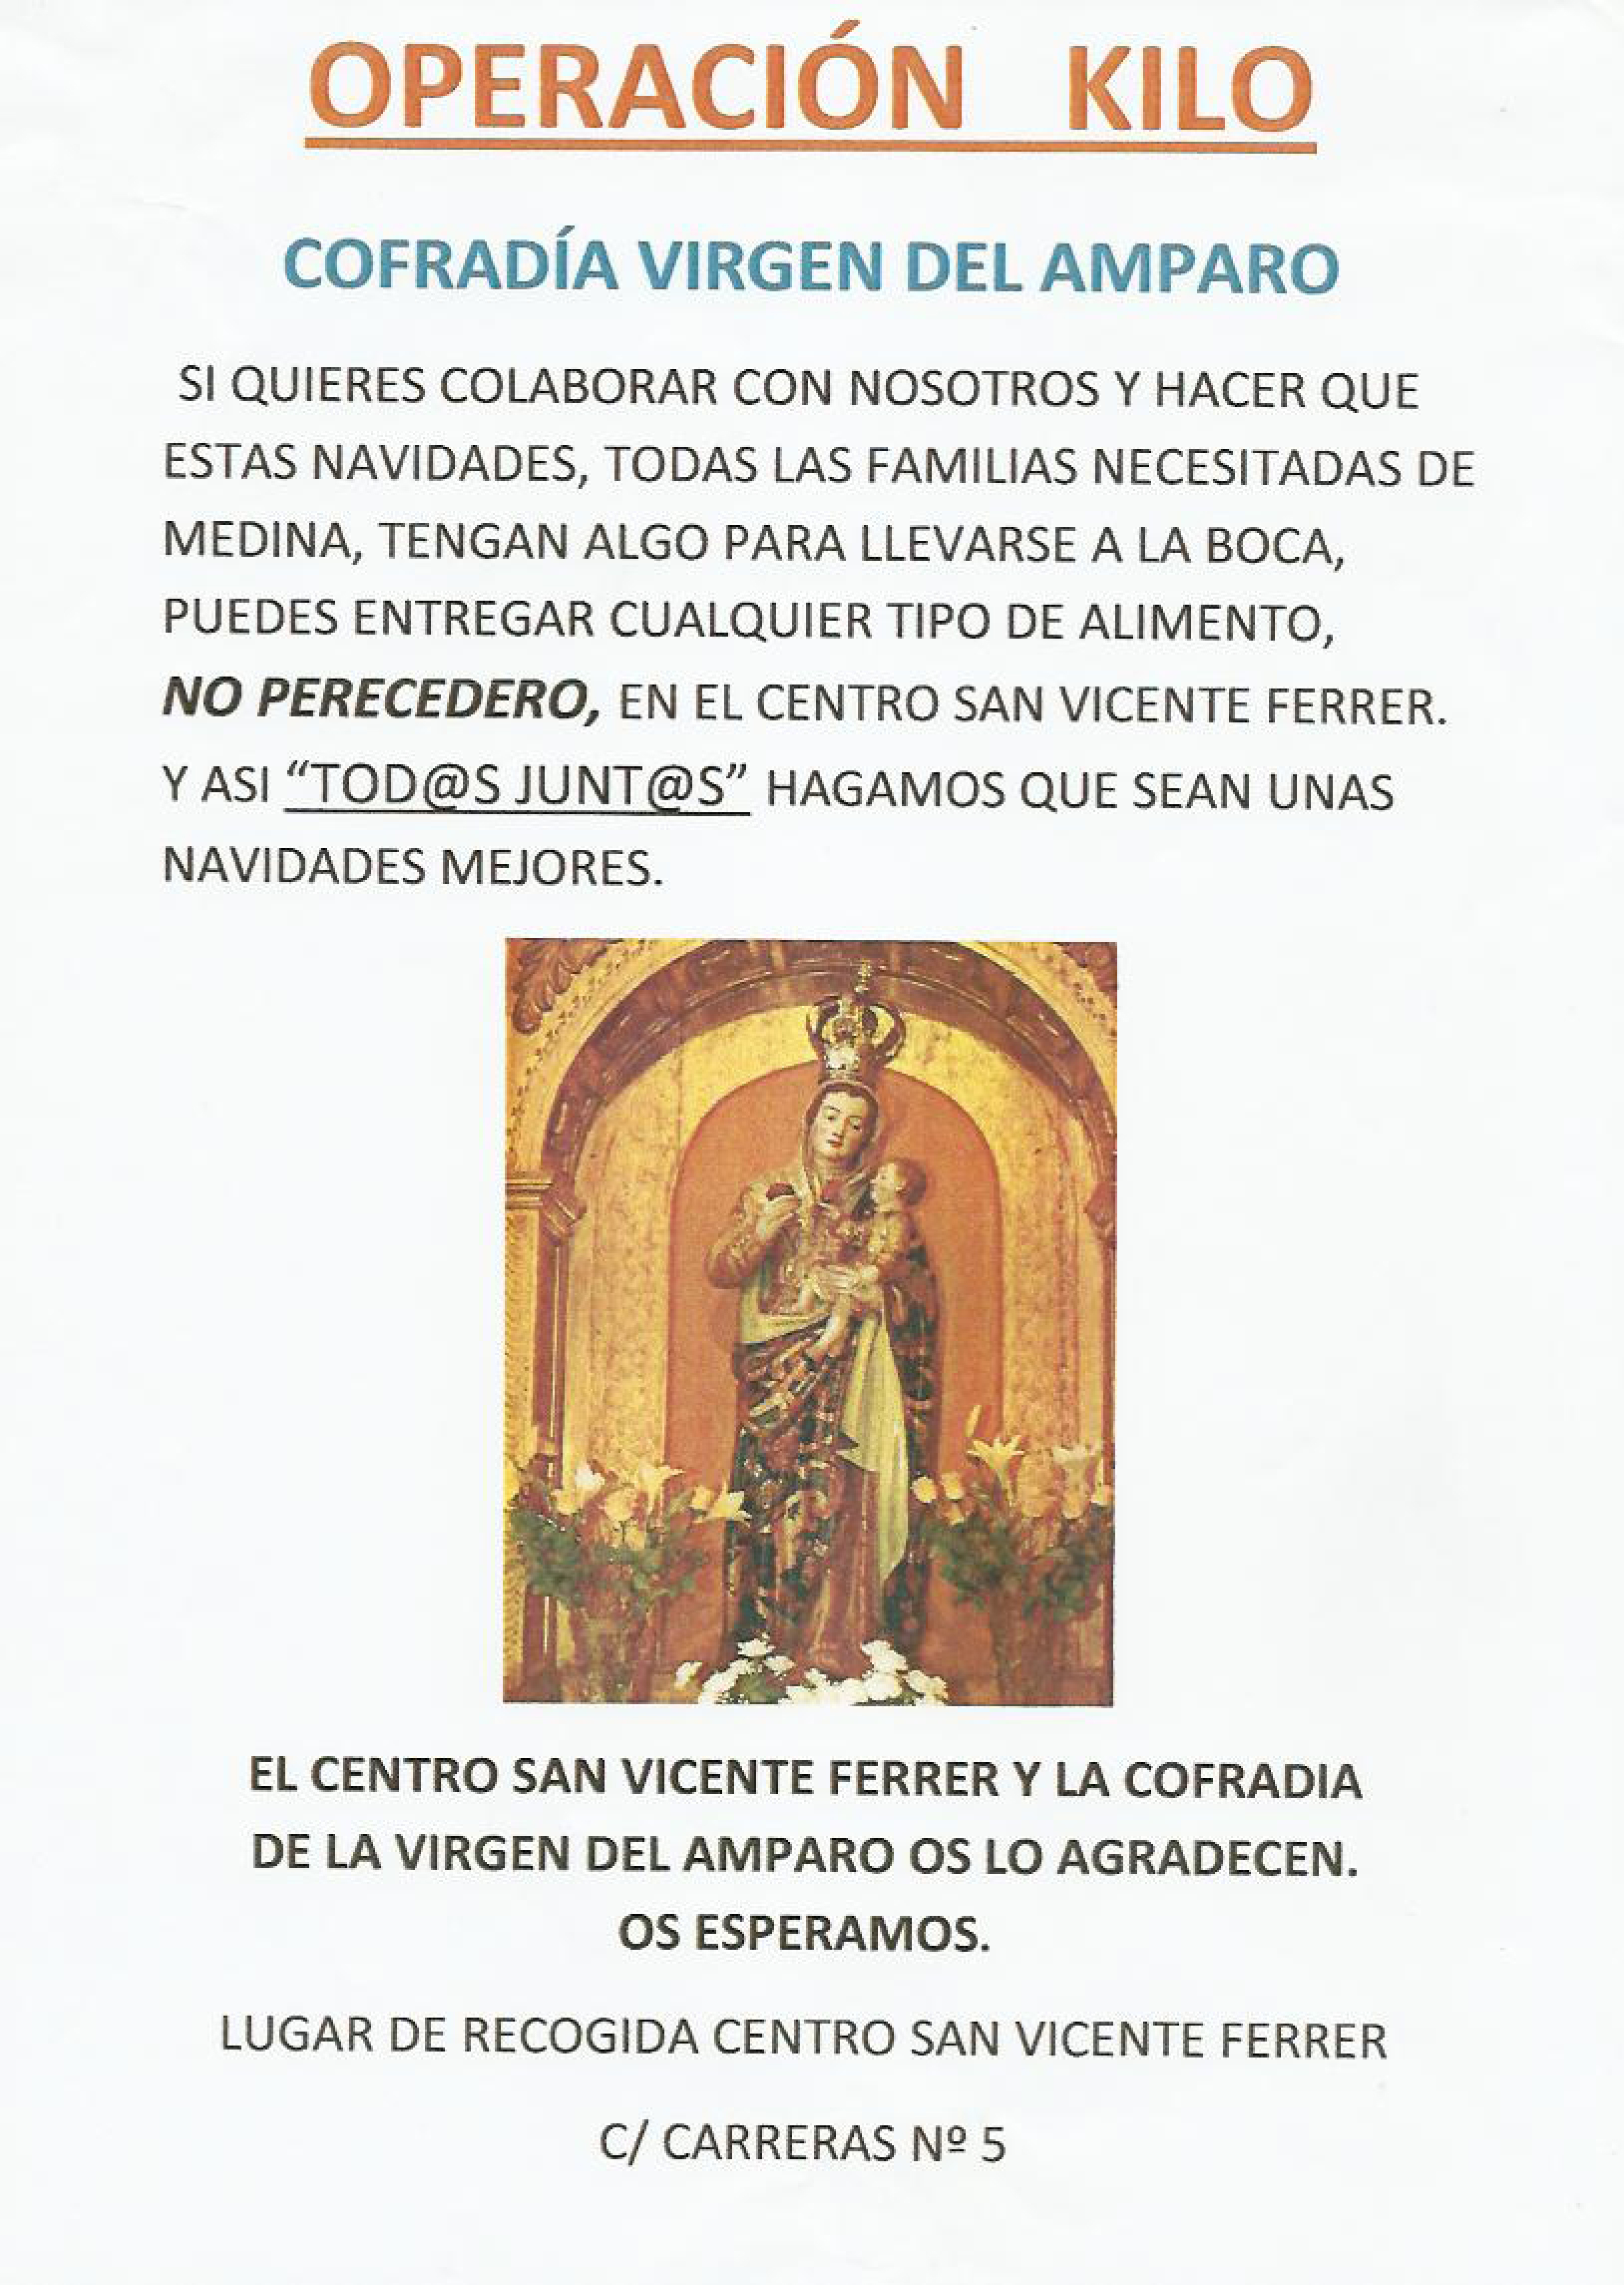 La Cofradía de la Virgen del Amparo Organiza una Operación Kilo